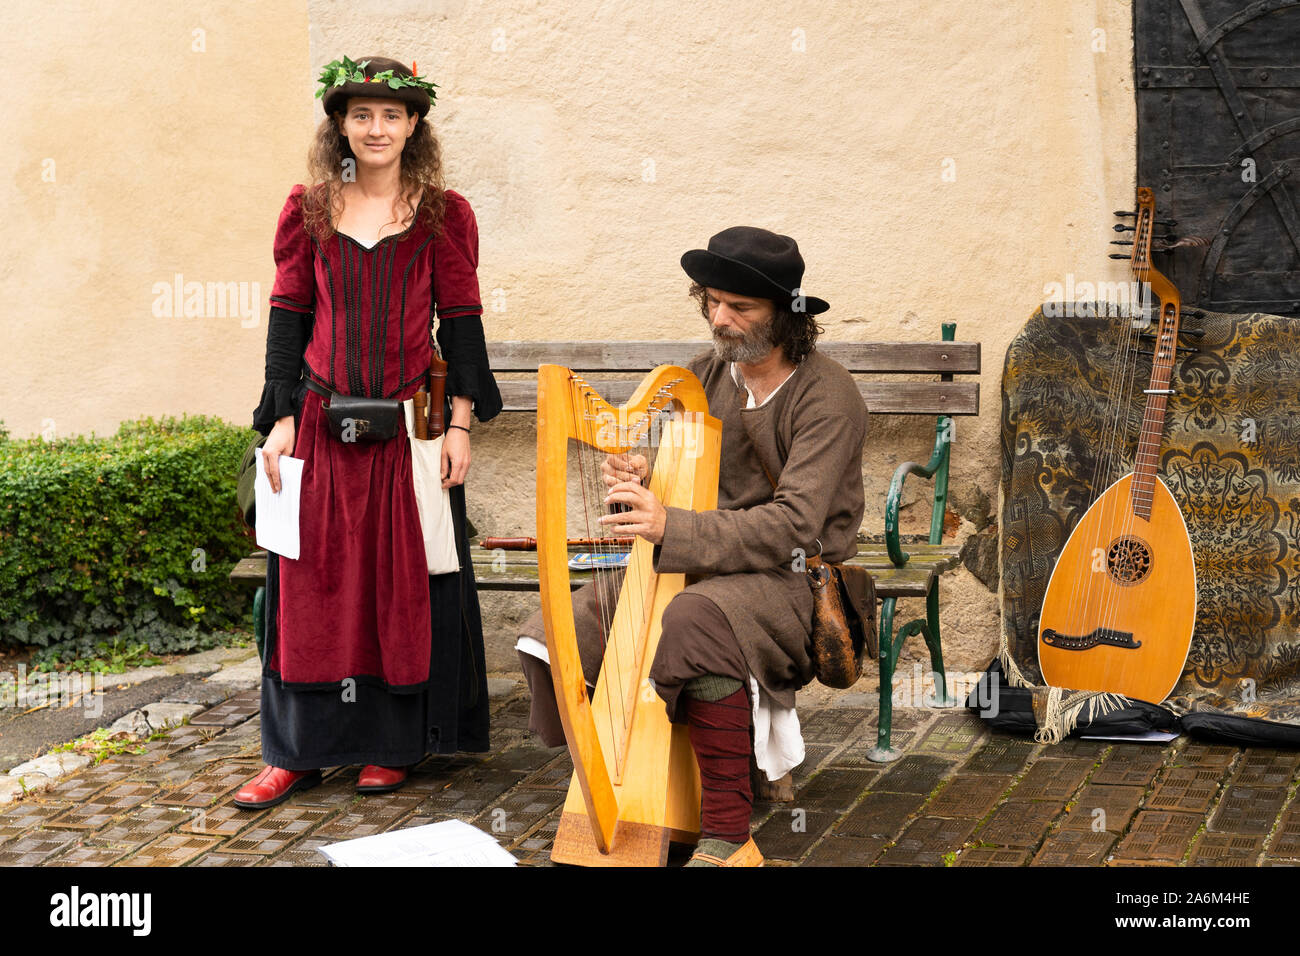 Un homme et une femme en tenue médiévale jouant de la harpe et le chant à l'Eggenburg populaires Festival médiéval, le plus grand événement médiéval Autriche Banque D'Images